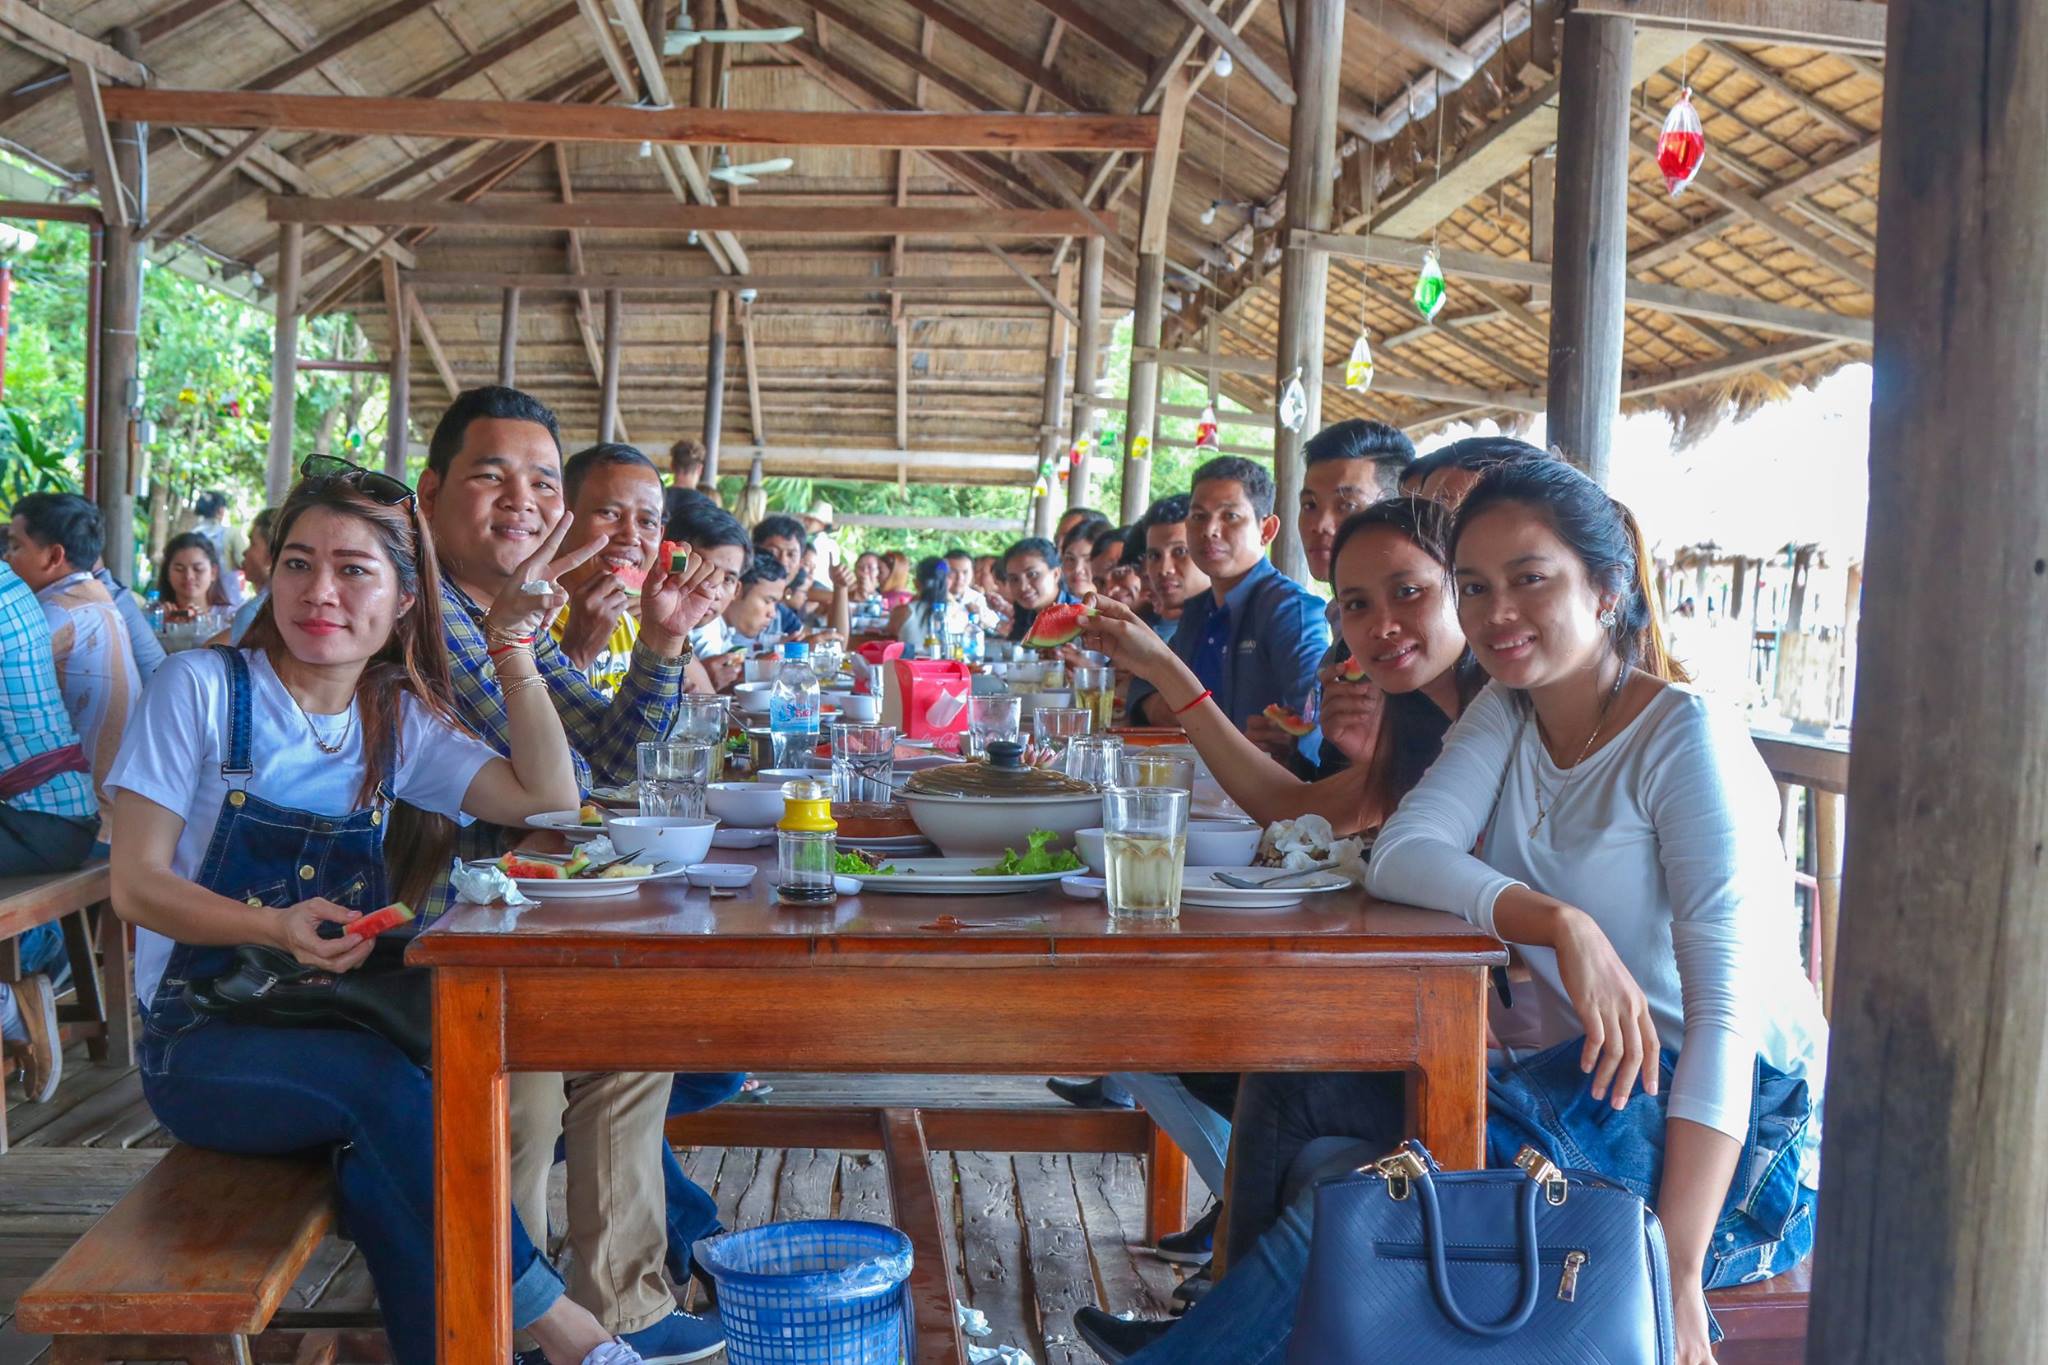 Annual Trip 2018 – Siem Reap